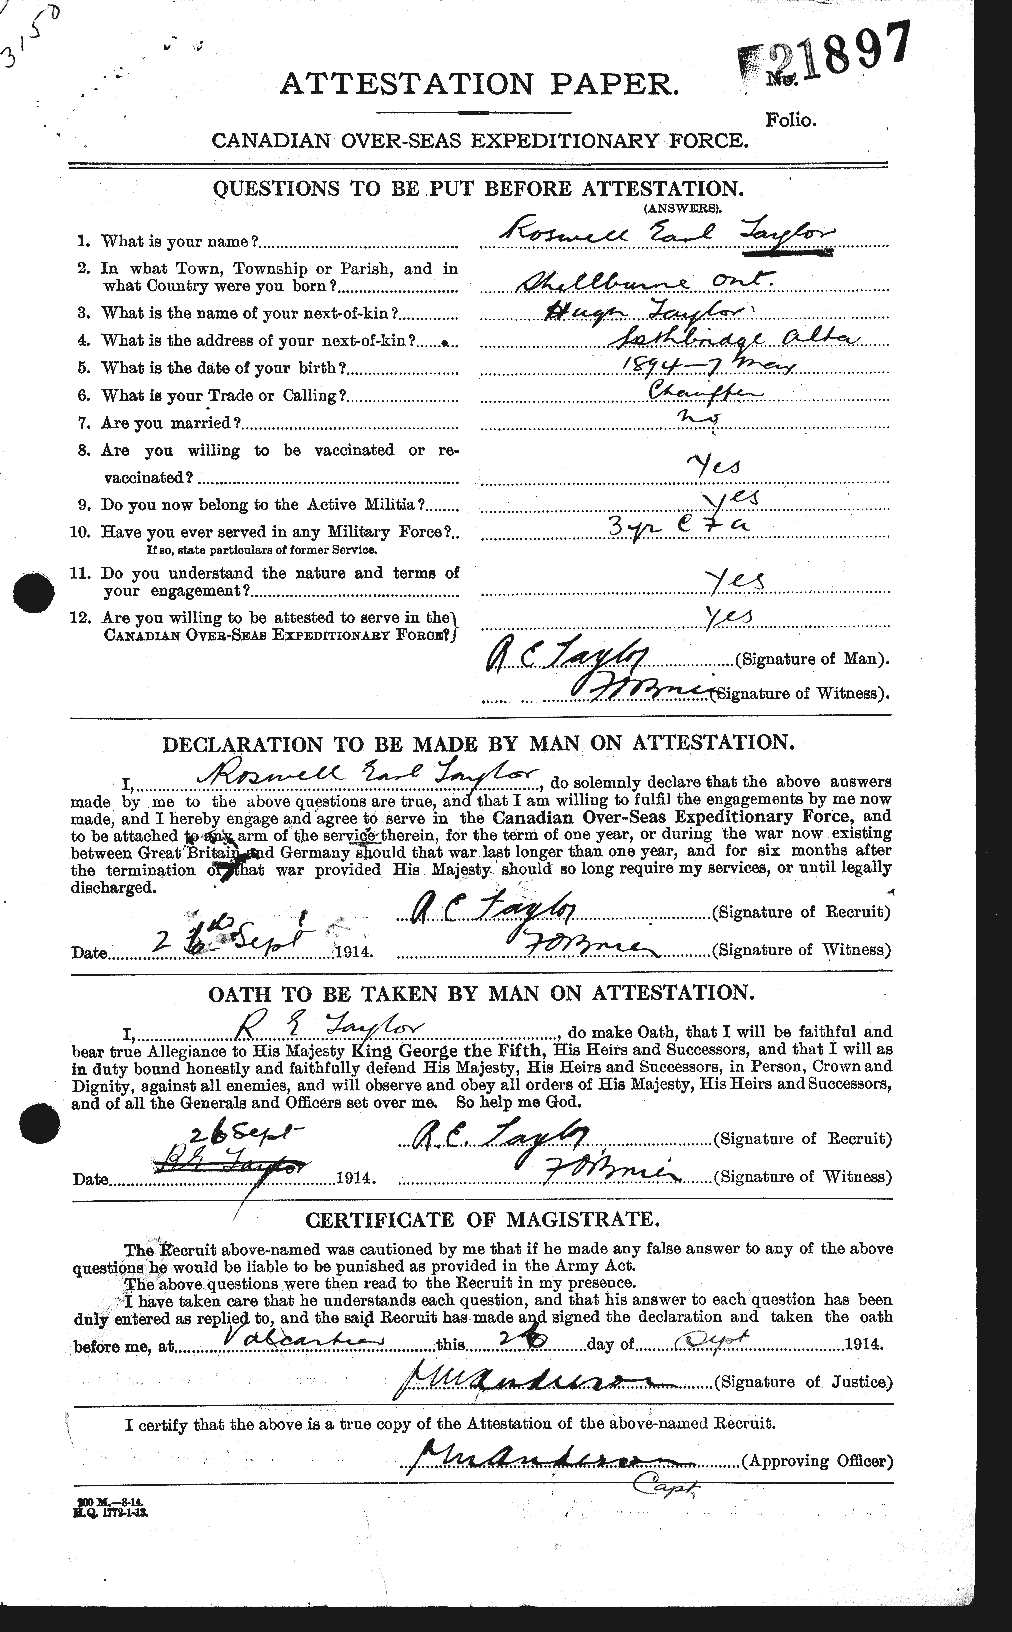 Dossiers du Personnel de la Première Guerre mondiale - CEC 627517a